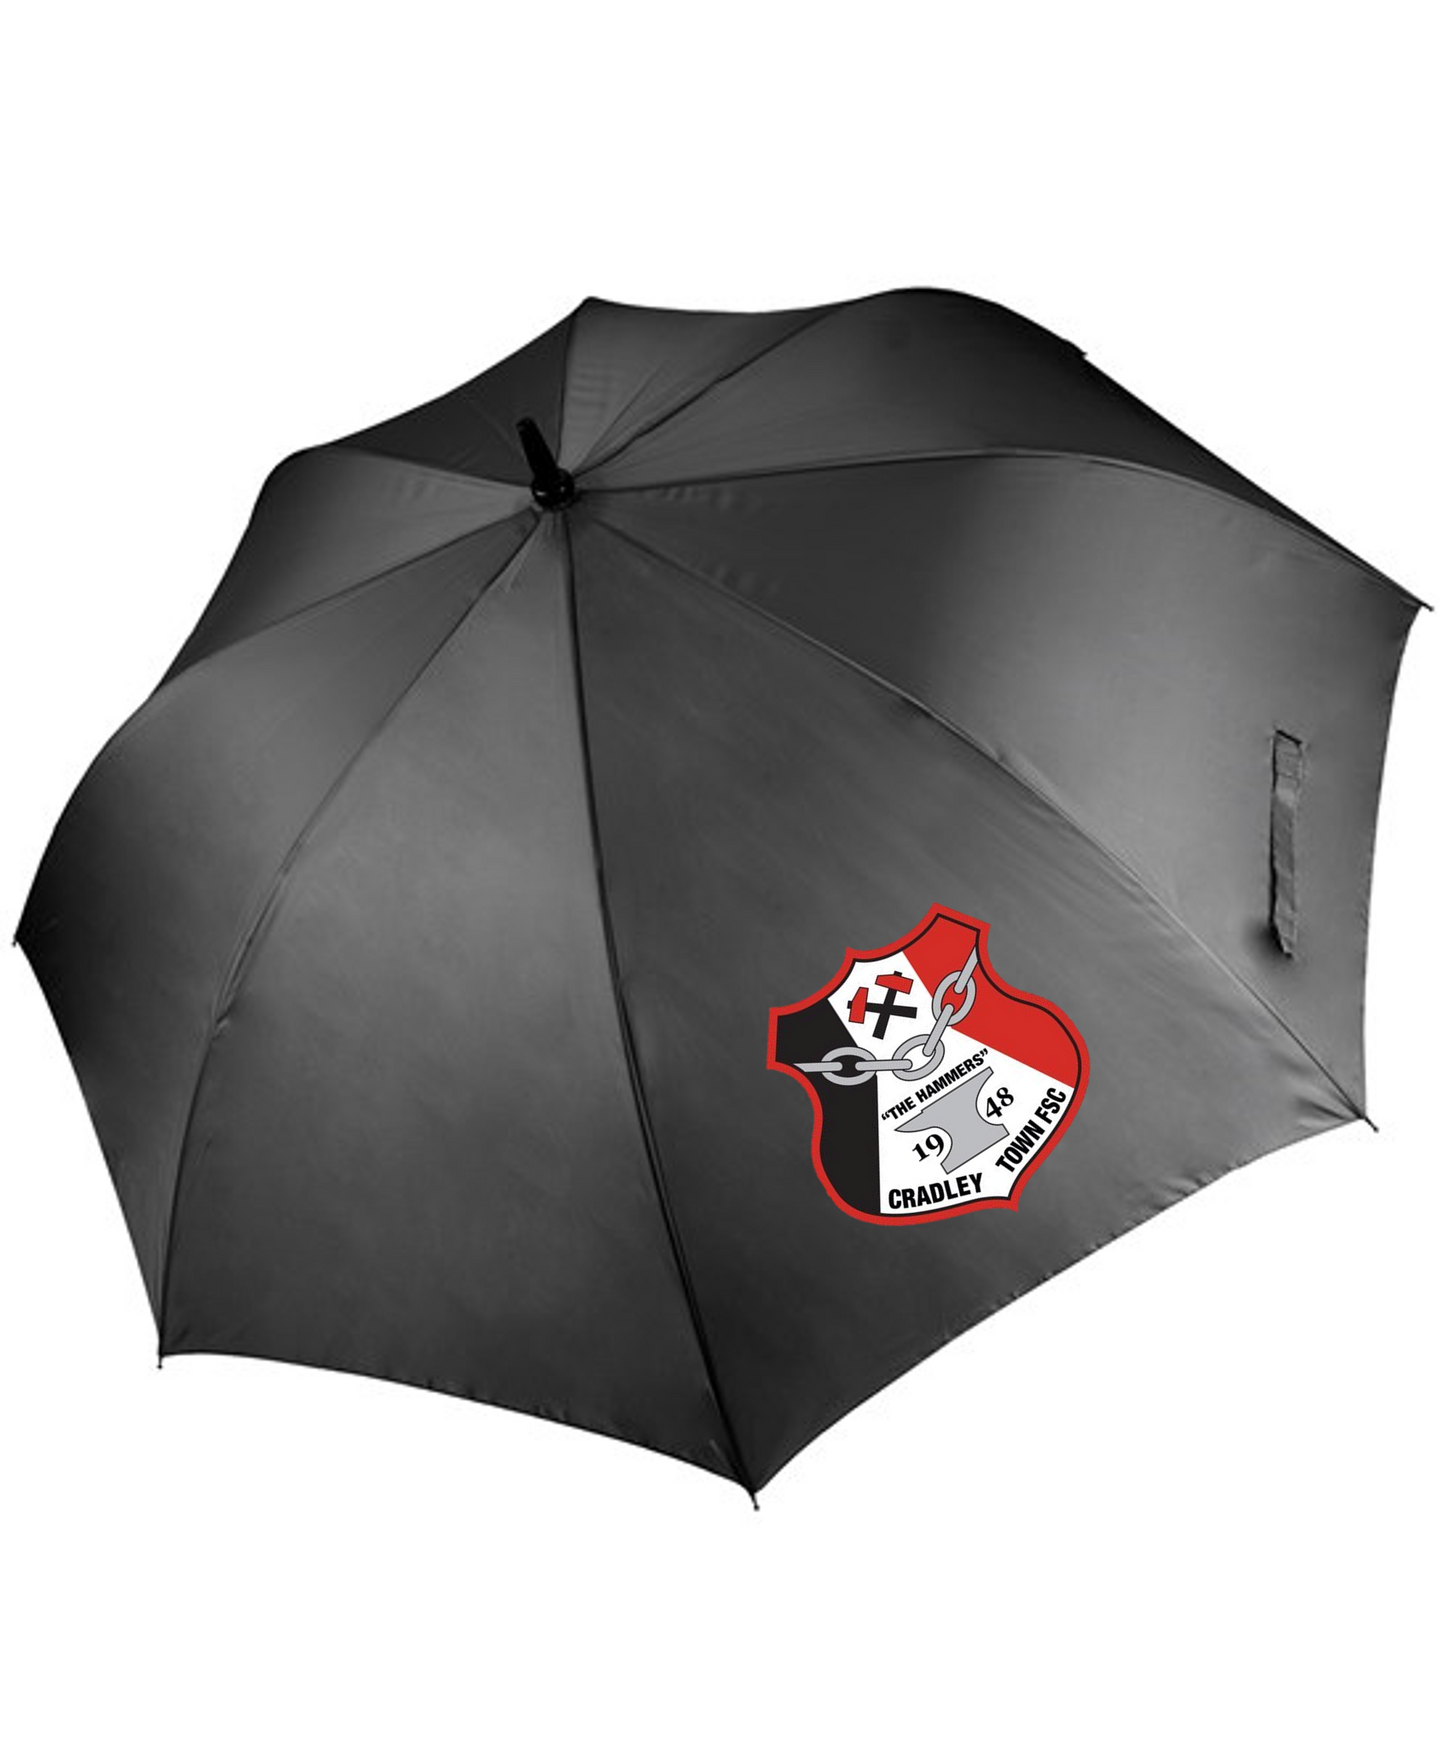 Cradley Town FC Umbrella